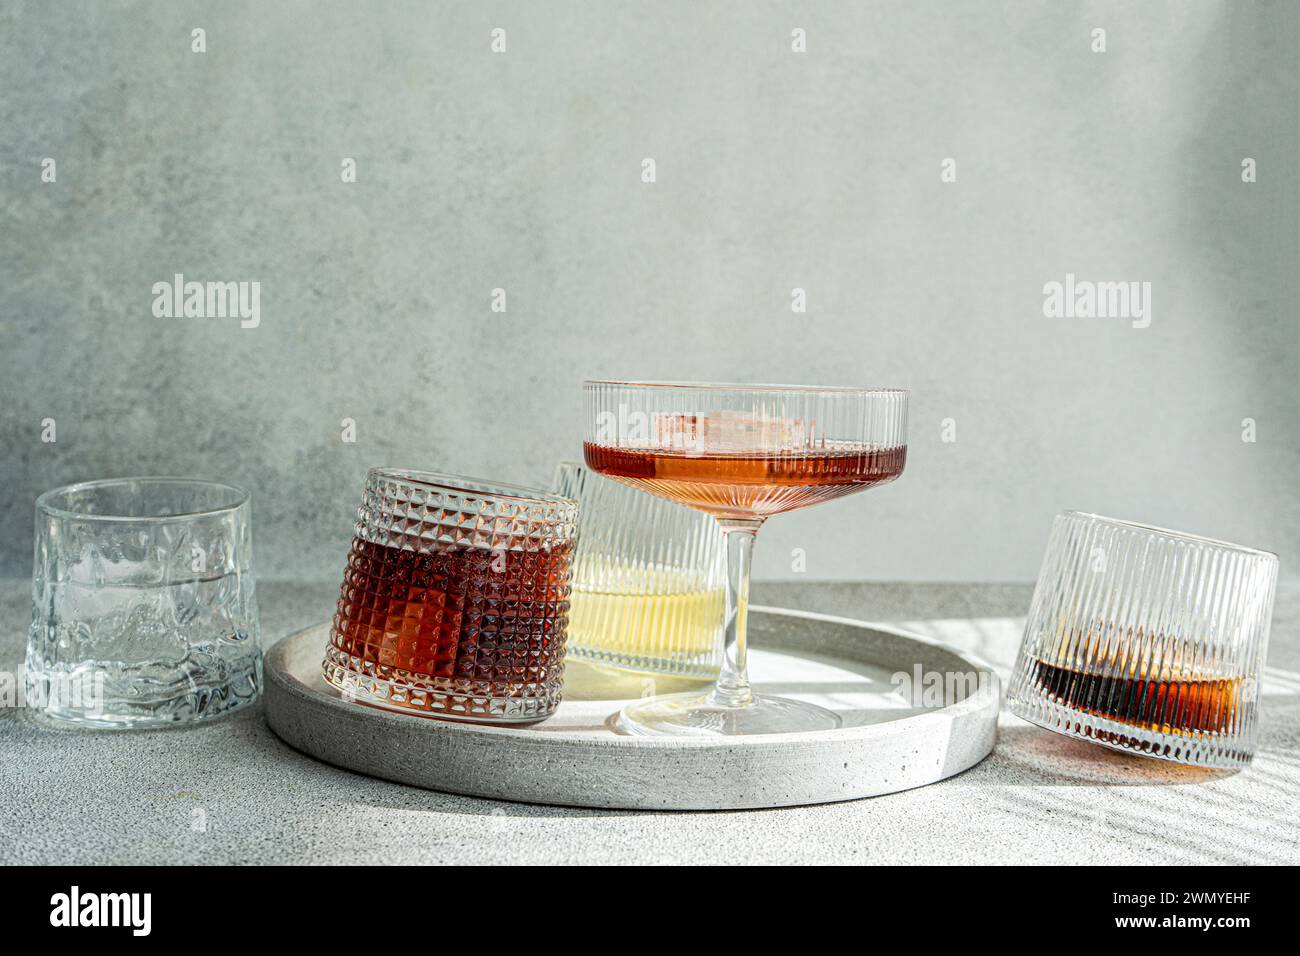 Eine Auswahl an alkoholischen Getränken in strukturierten Gläsern, elegant auf einem runden Betontablett mit sanftem grauen Hintergrund Stockfoto